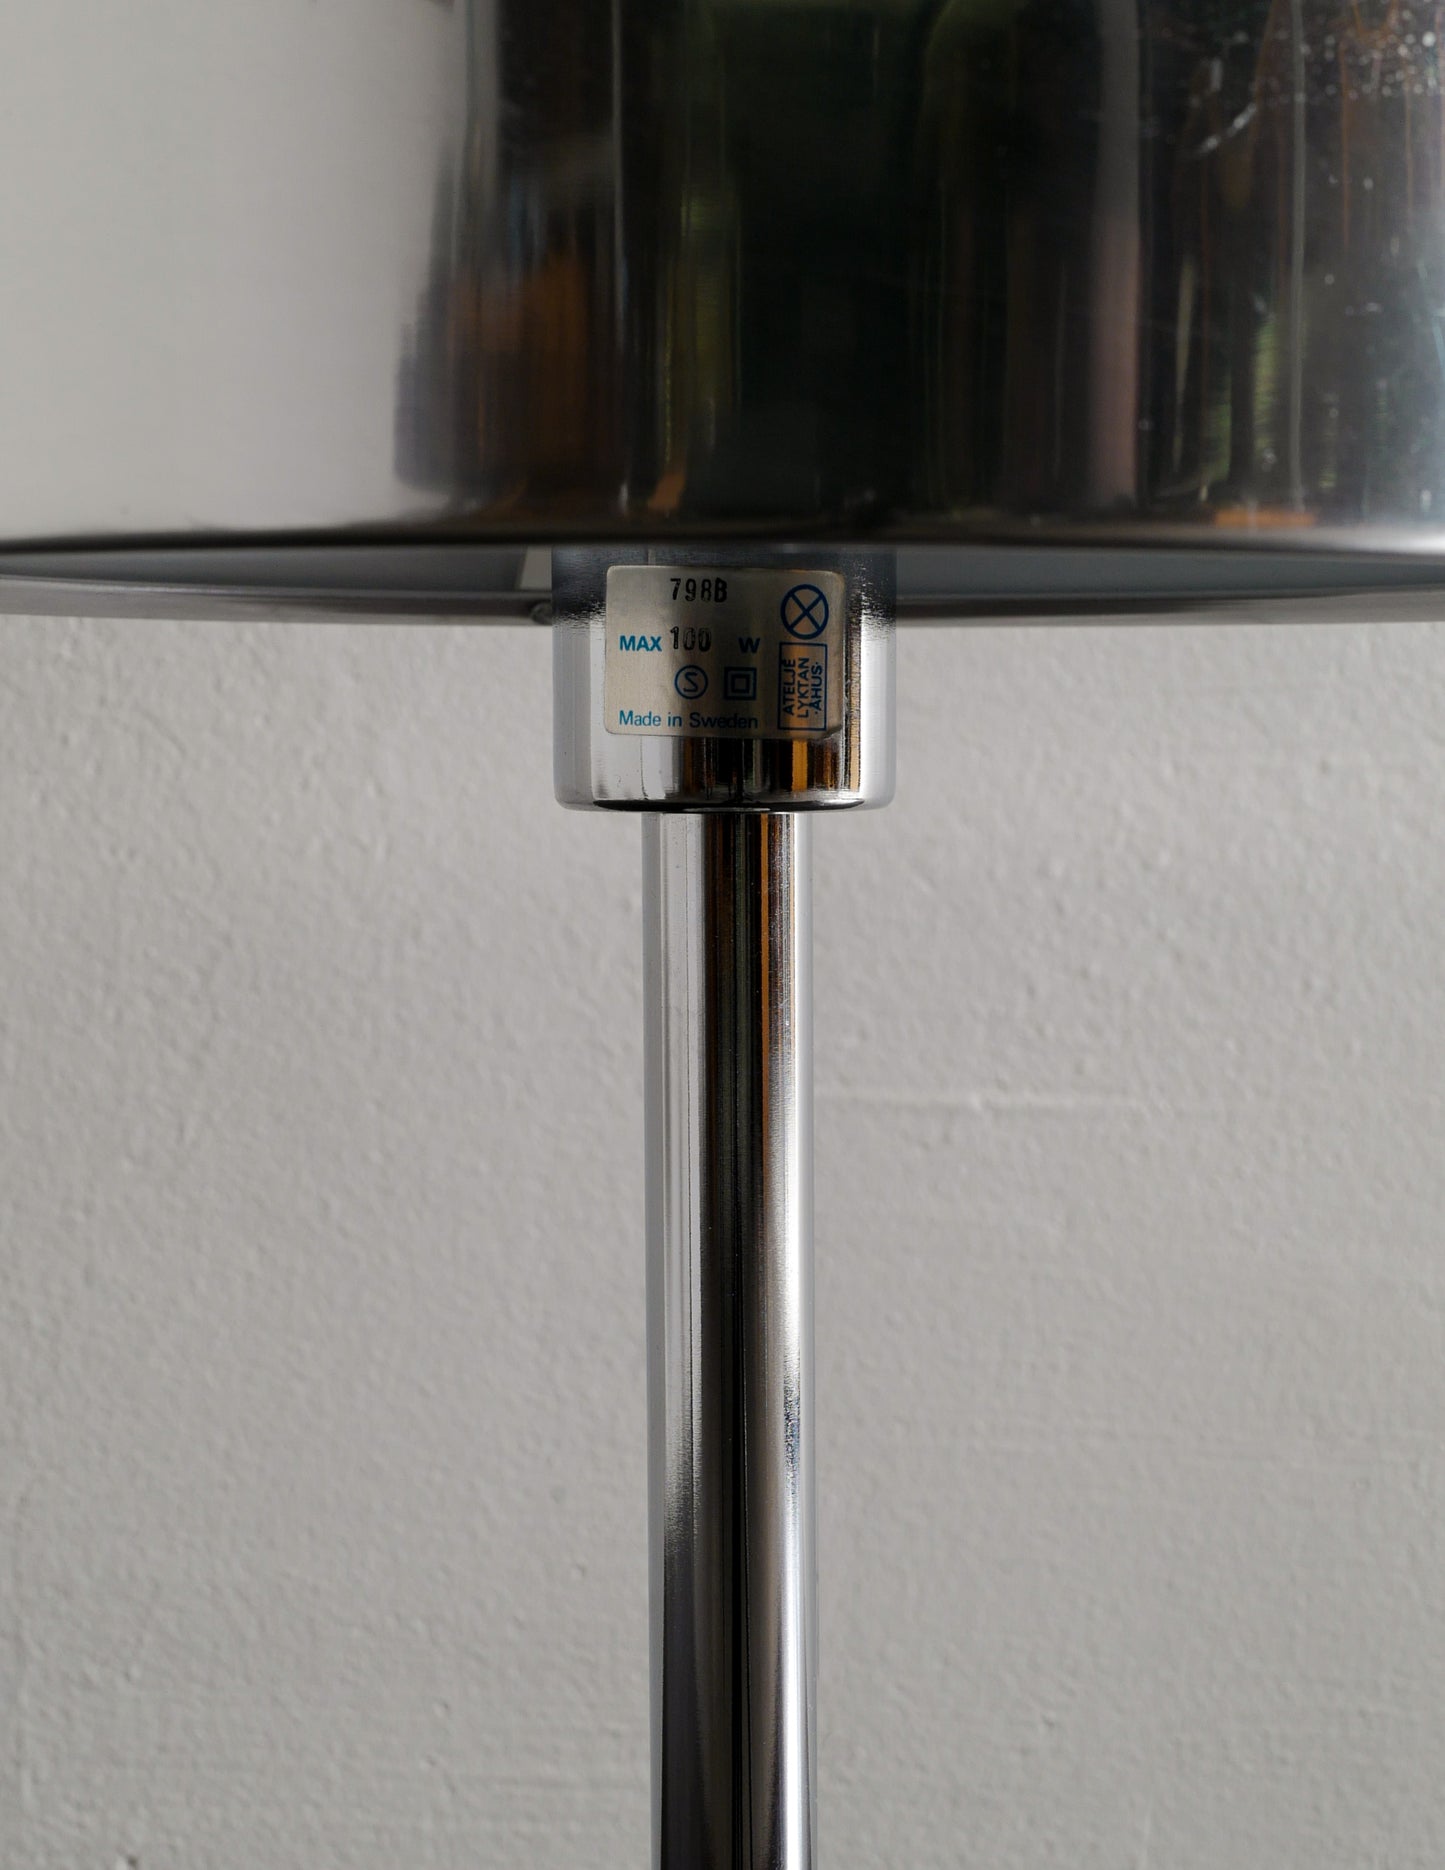 ANDERS PEHRSON "BUMLING" LAMP, 1960s